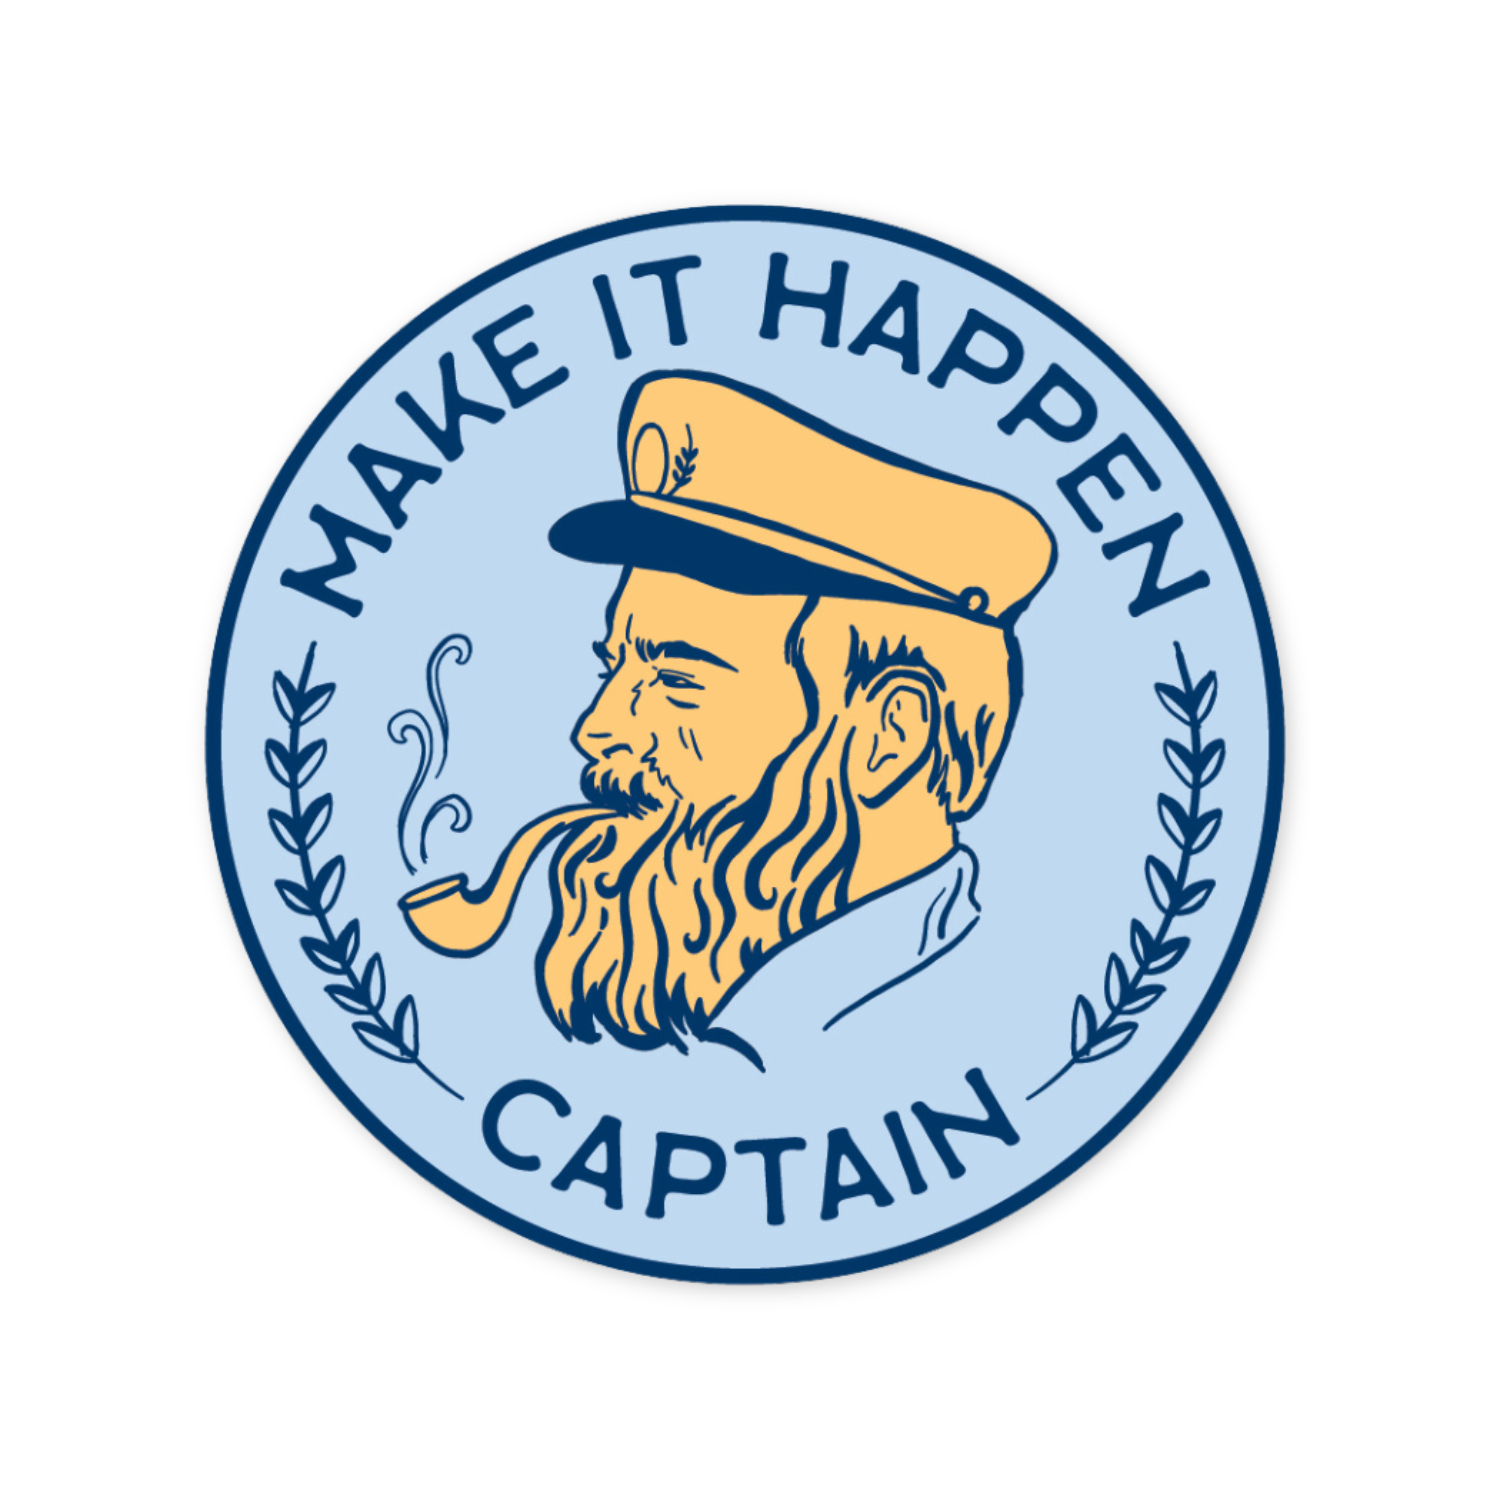 Make It Happen Captain Sticker